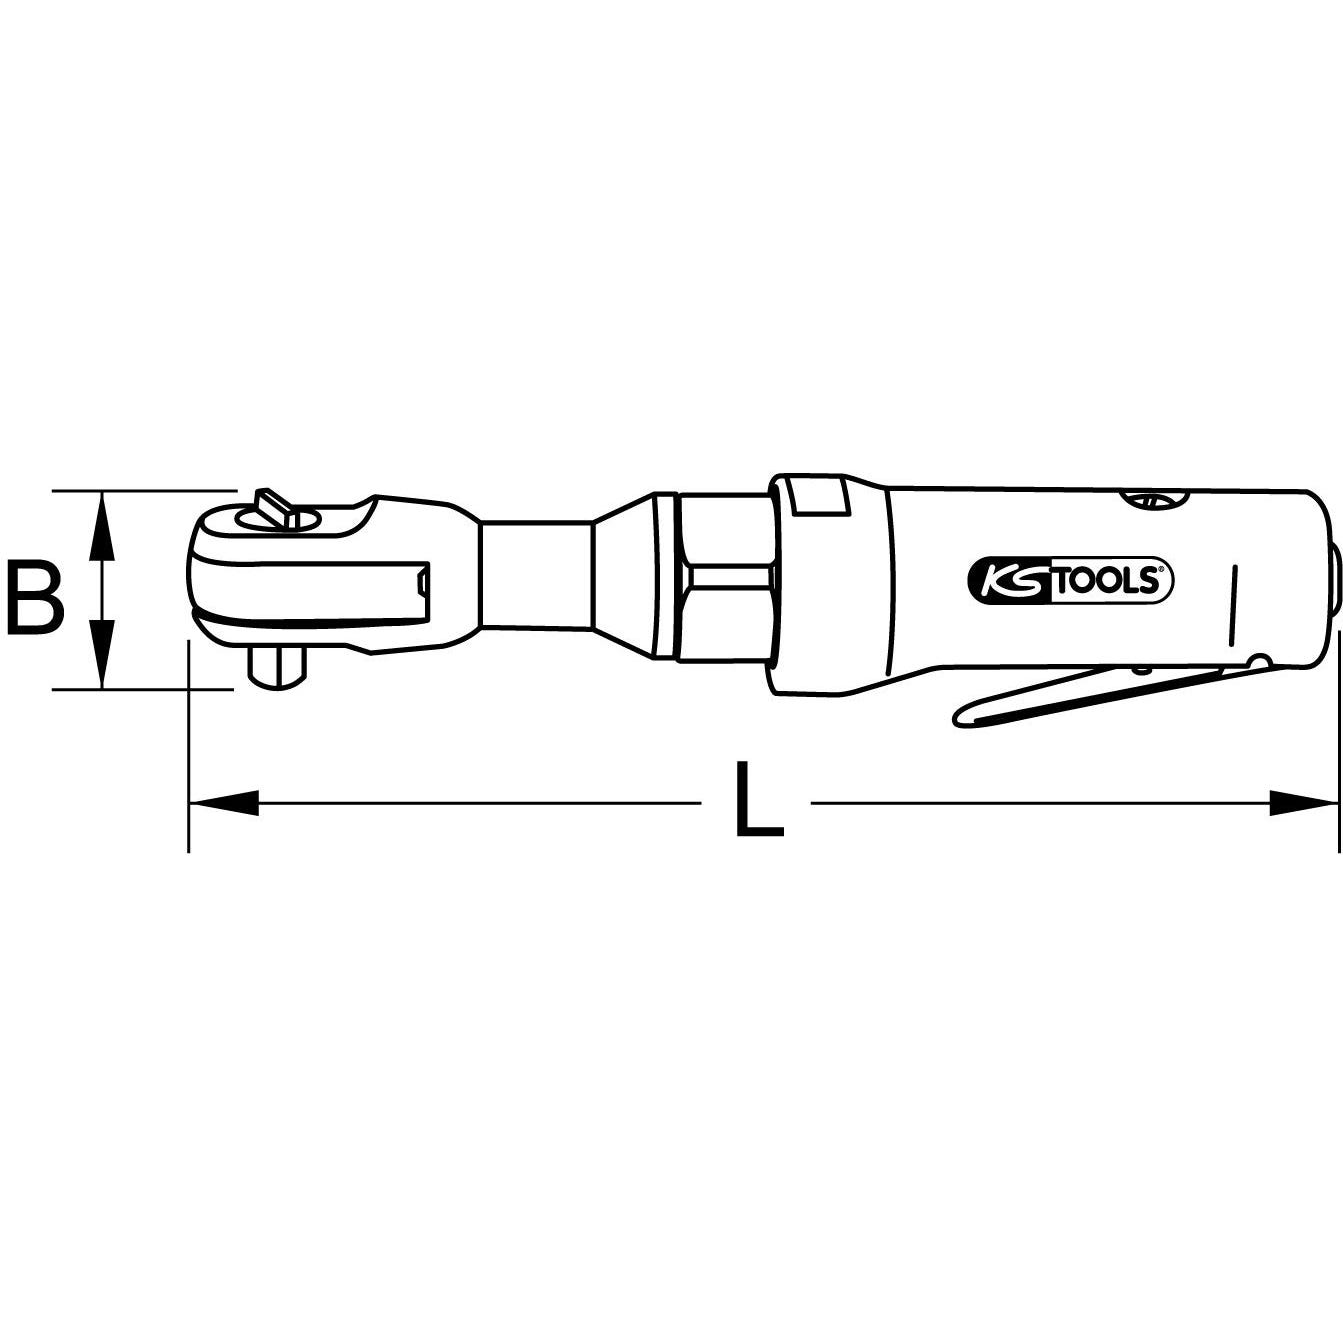 Clé à rochet KS TOOLS MONSTER Réversible - 3/8 pouces - 340mm - 515.3825 8